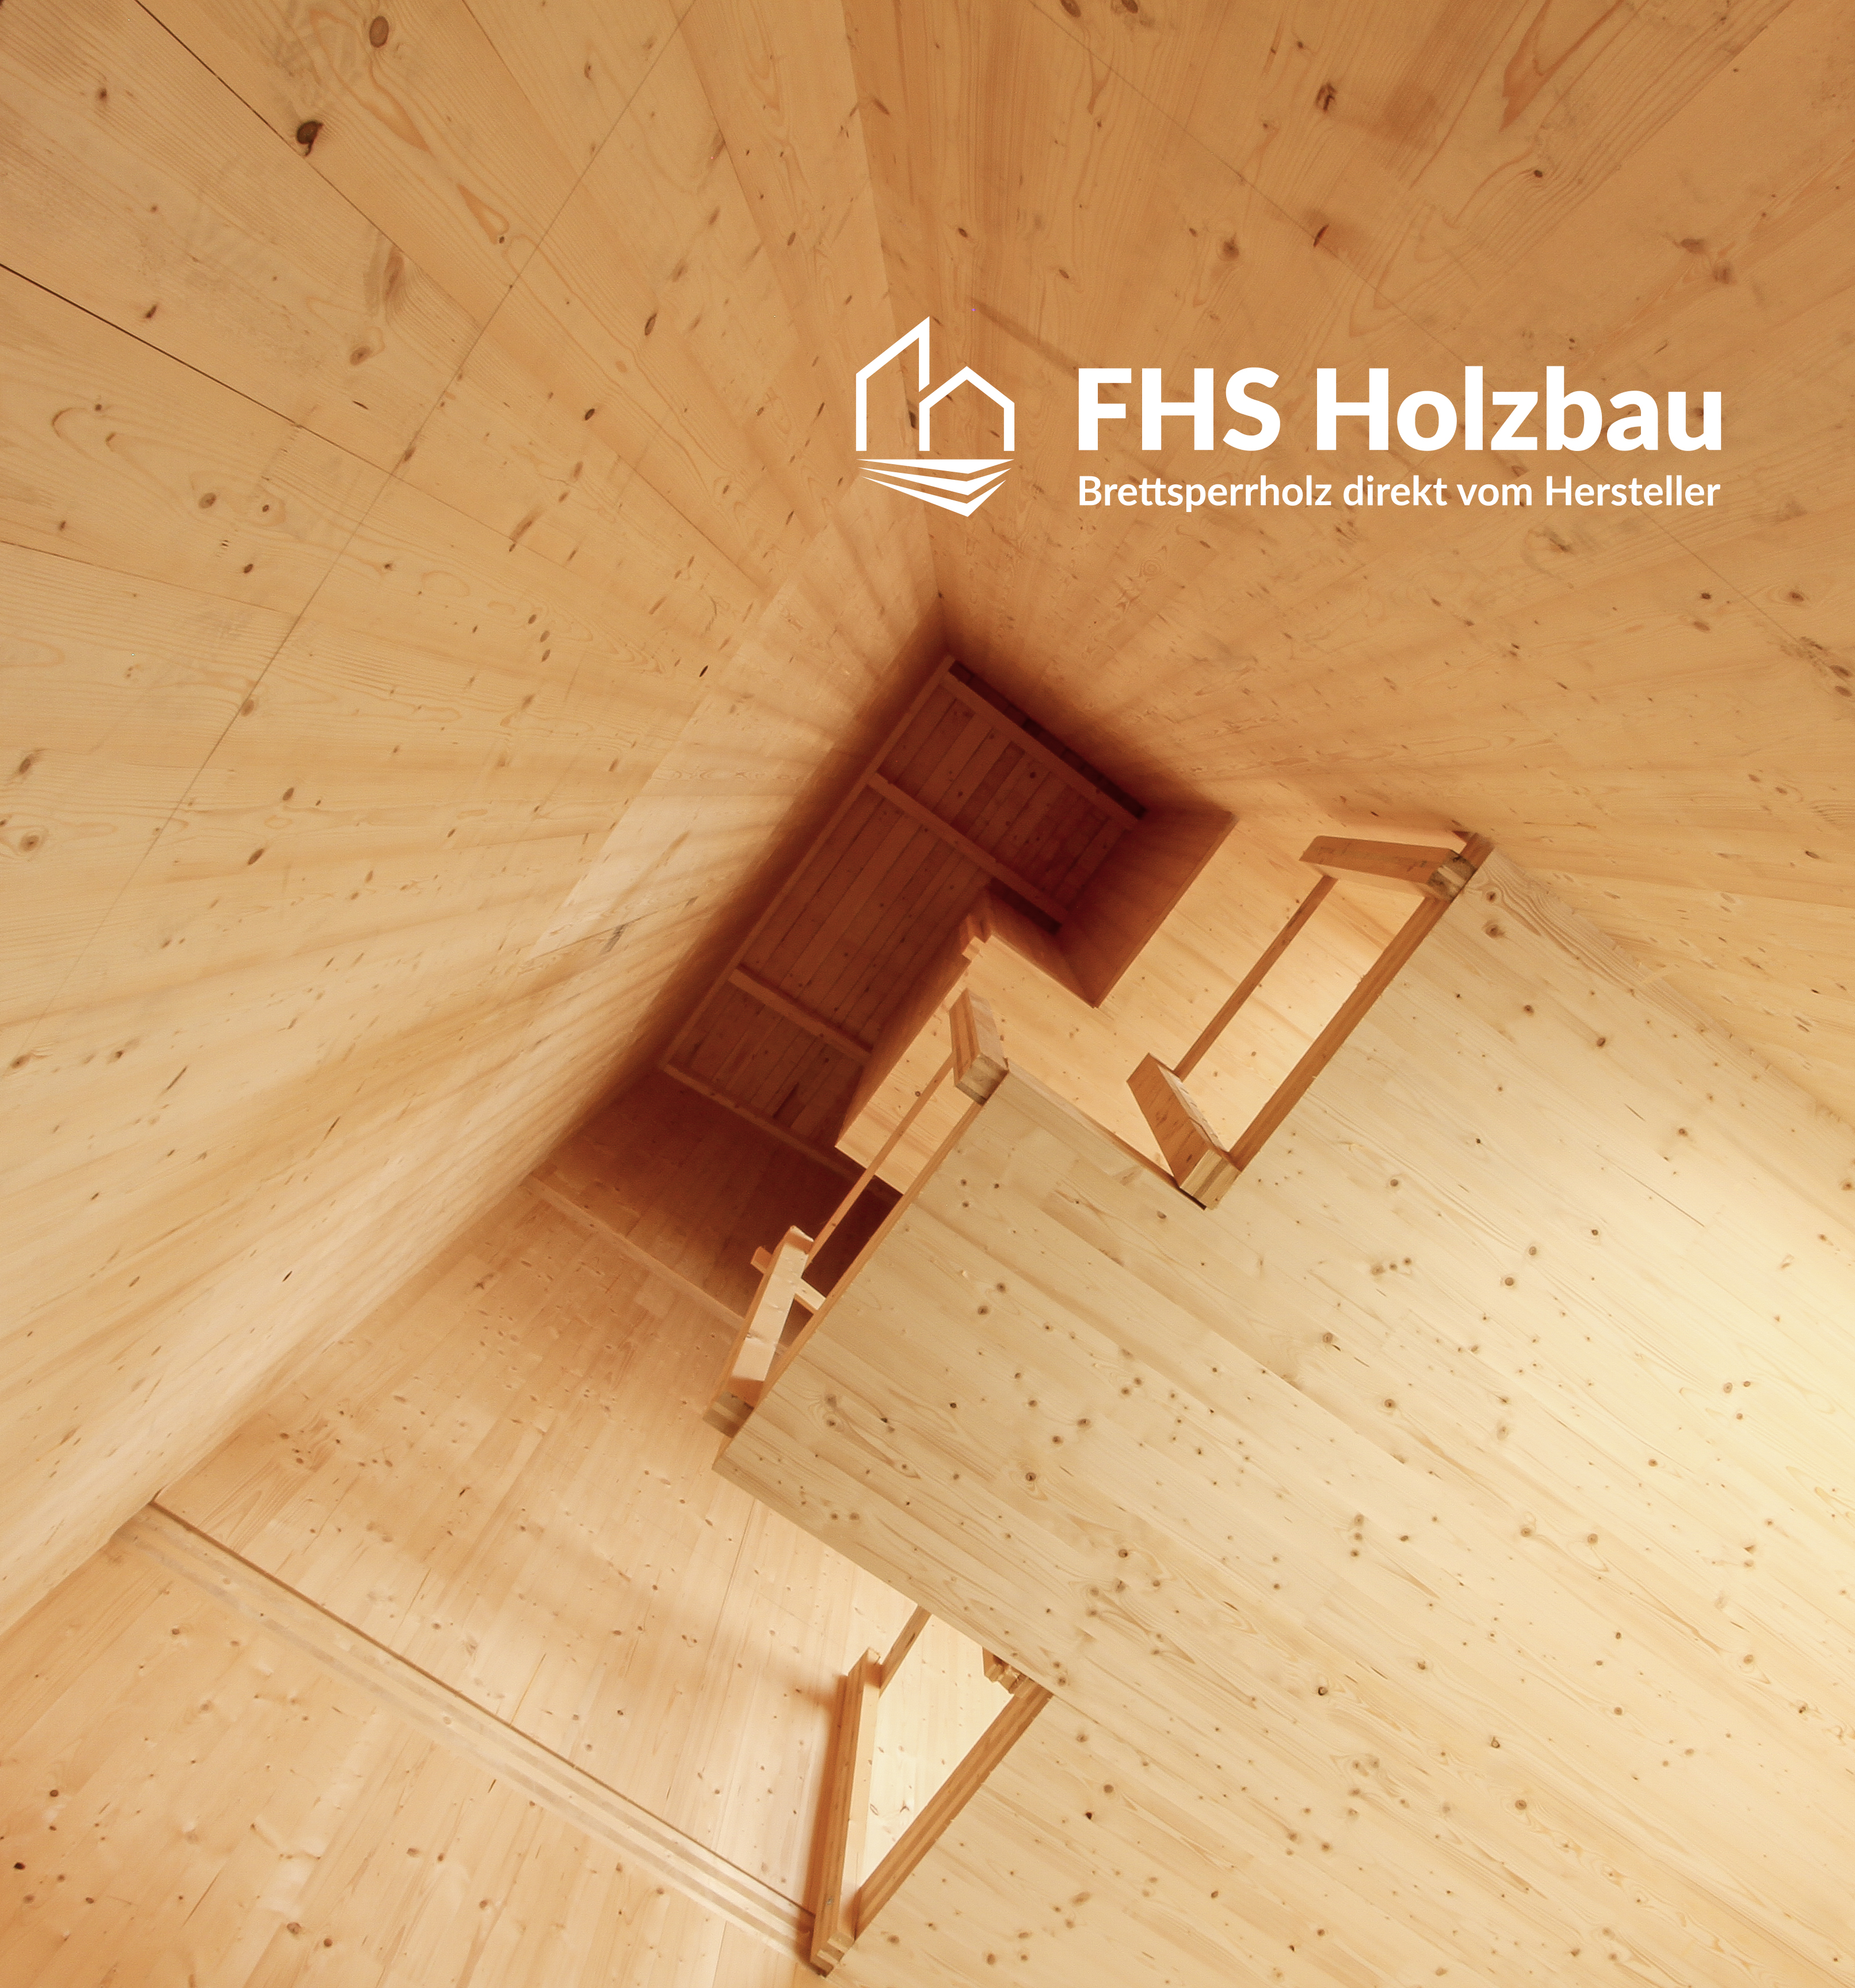 FHS Holzbau GmbH - Bildquelle: FHS Holzbau GmbH 